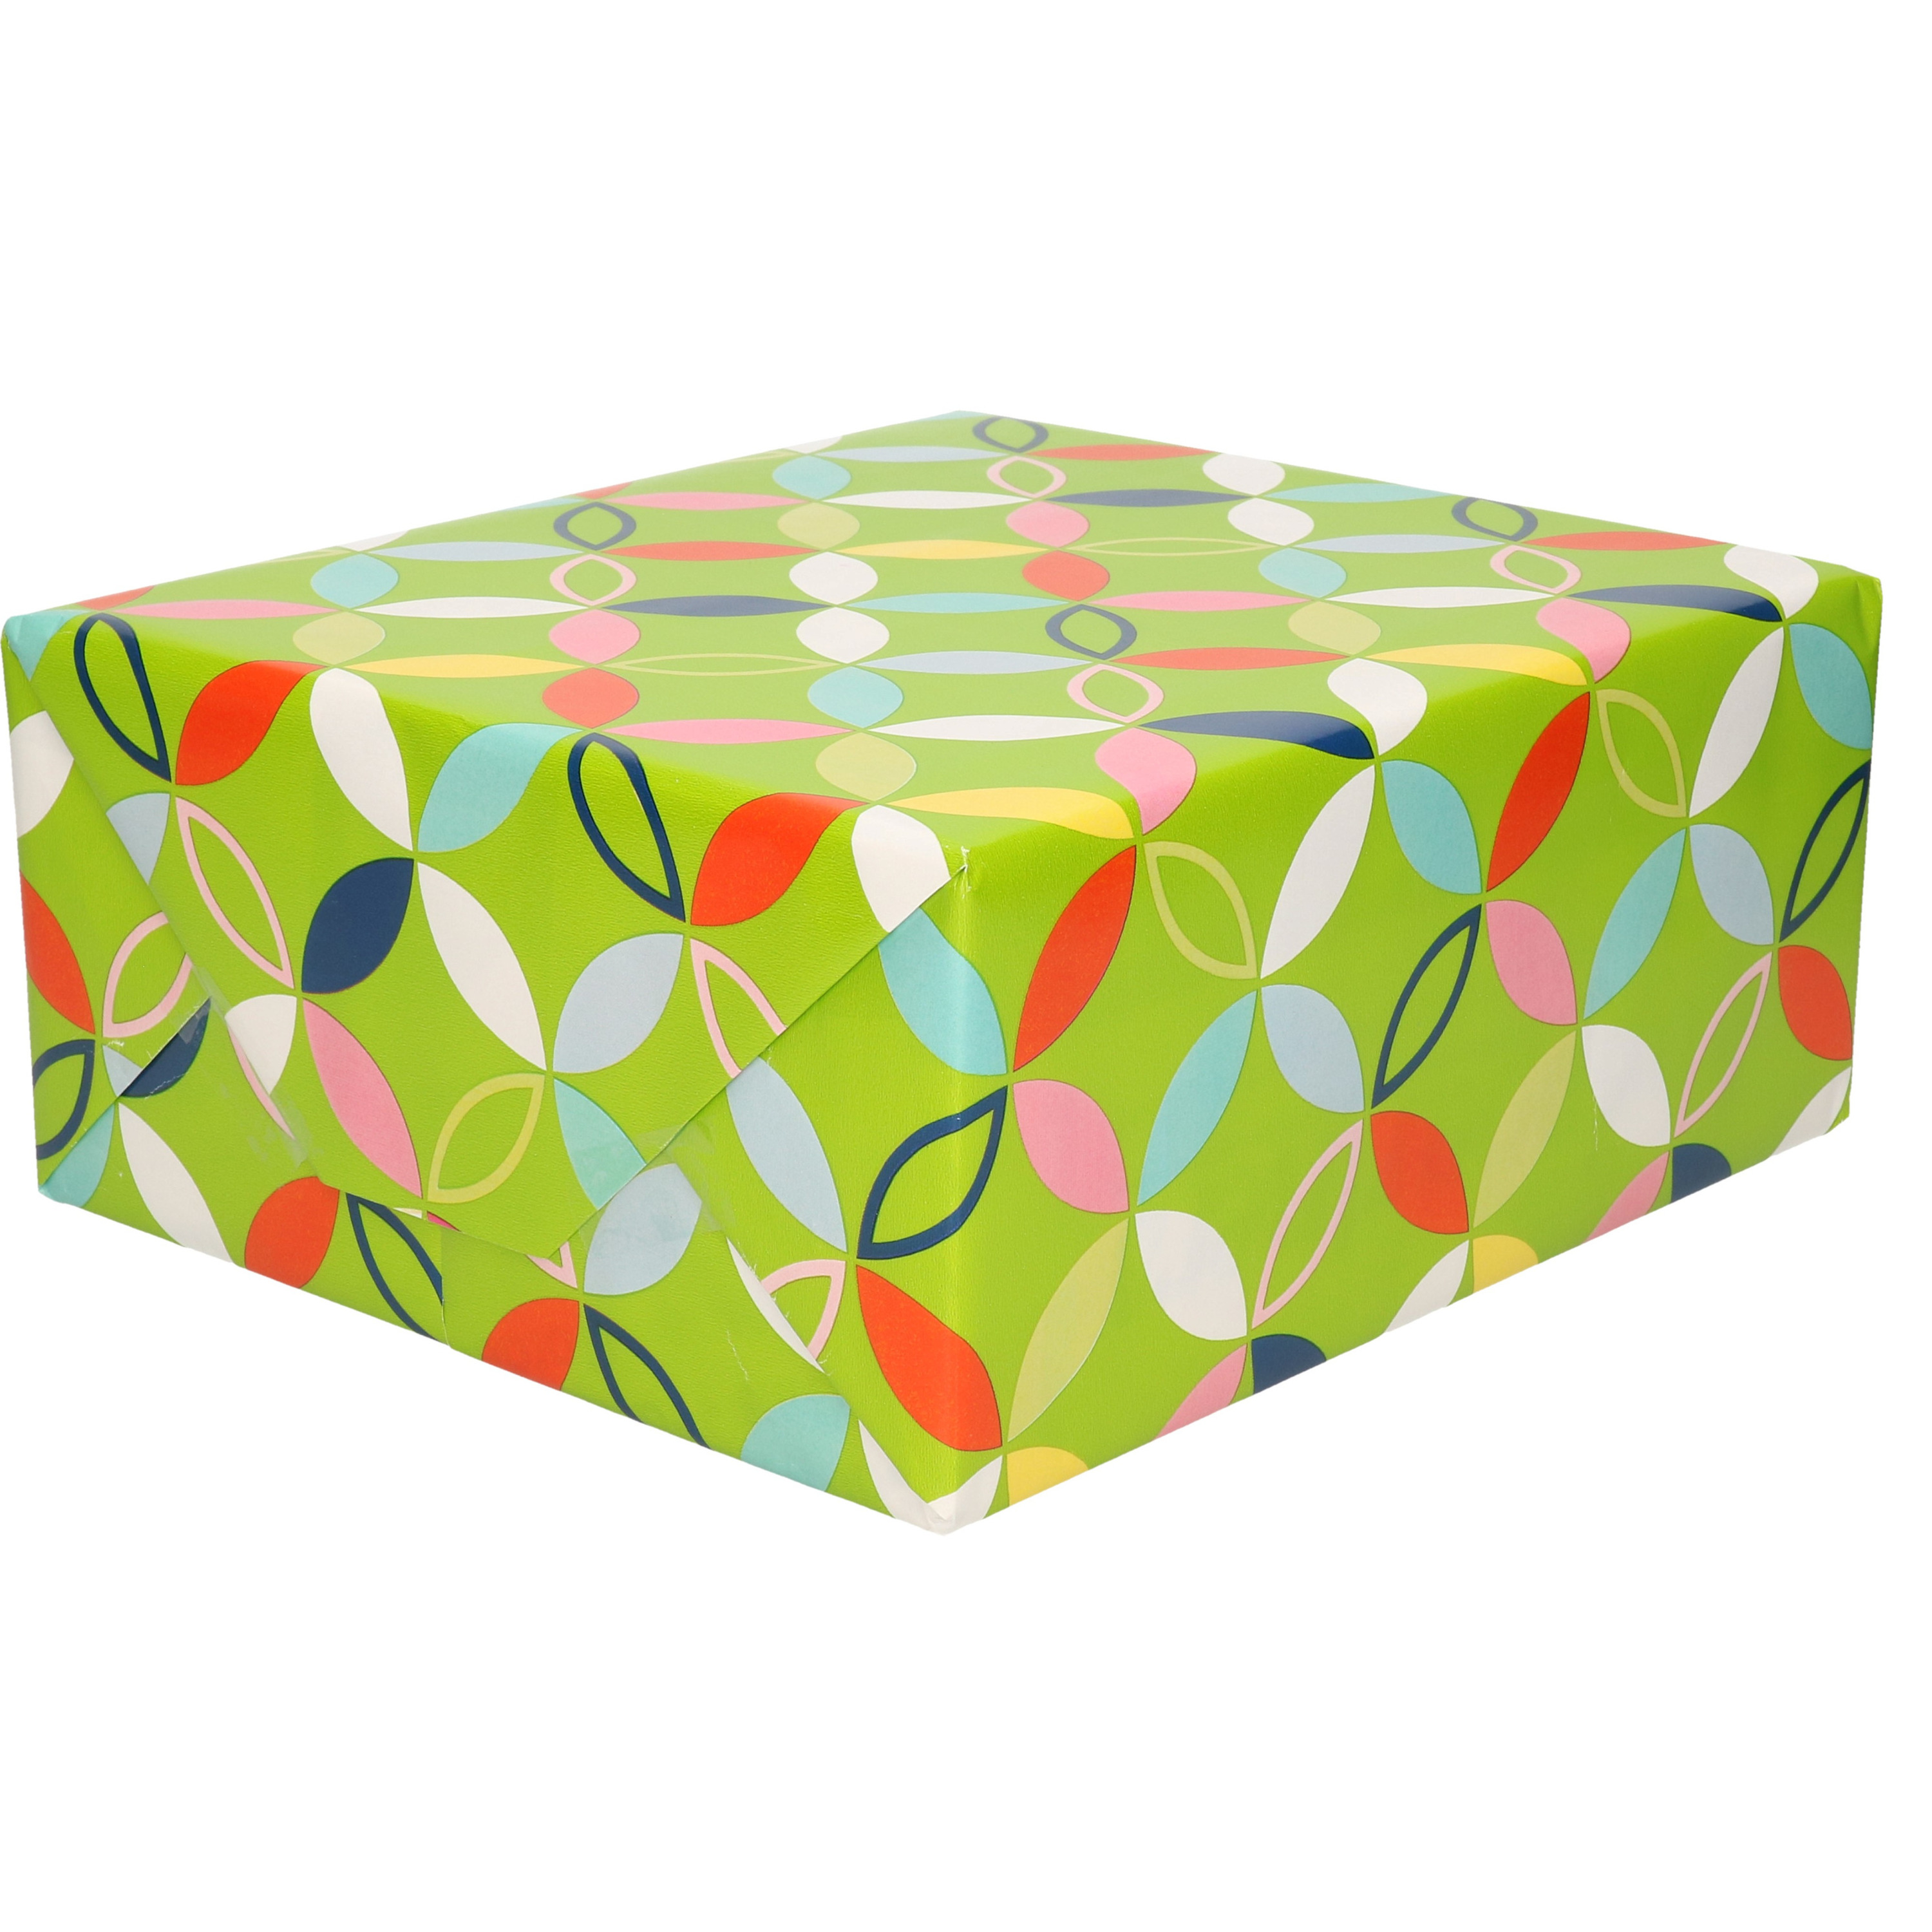 1x Inpakpapier/cadeaupapier groen met bloem figuren motief 200 x 70 cm rol